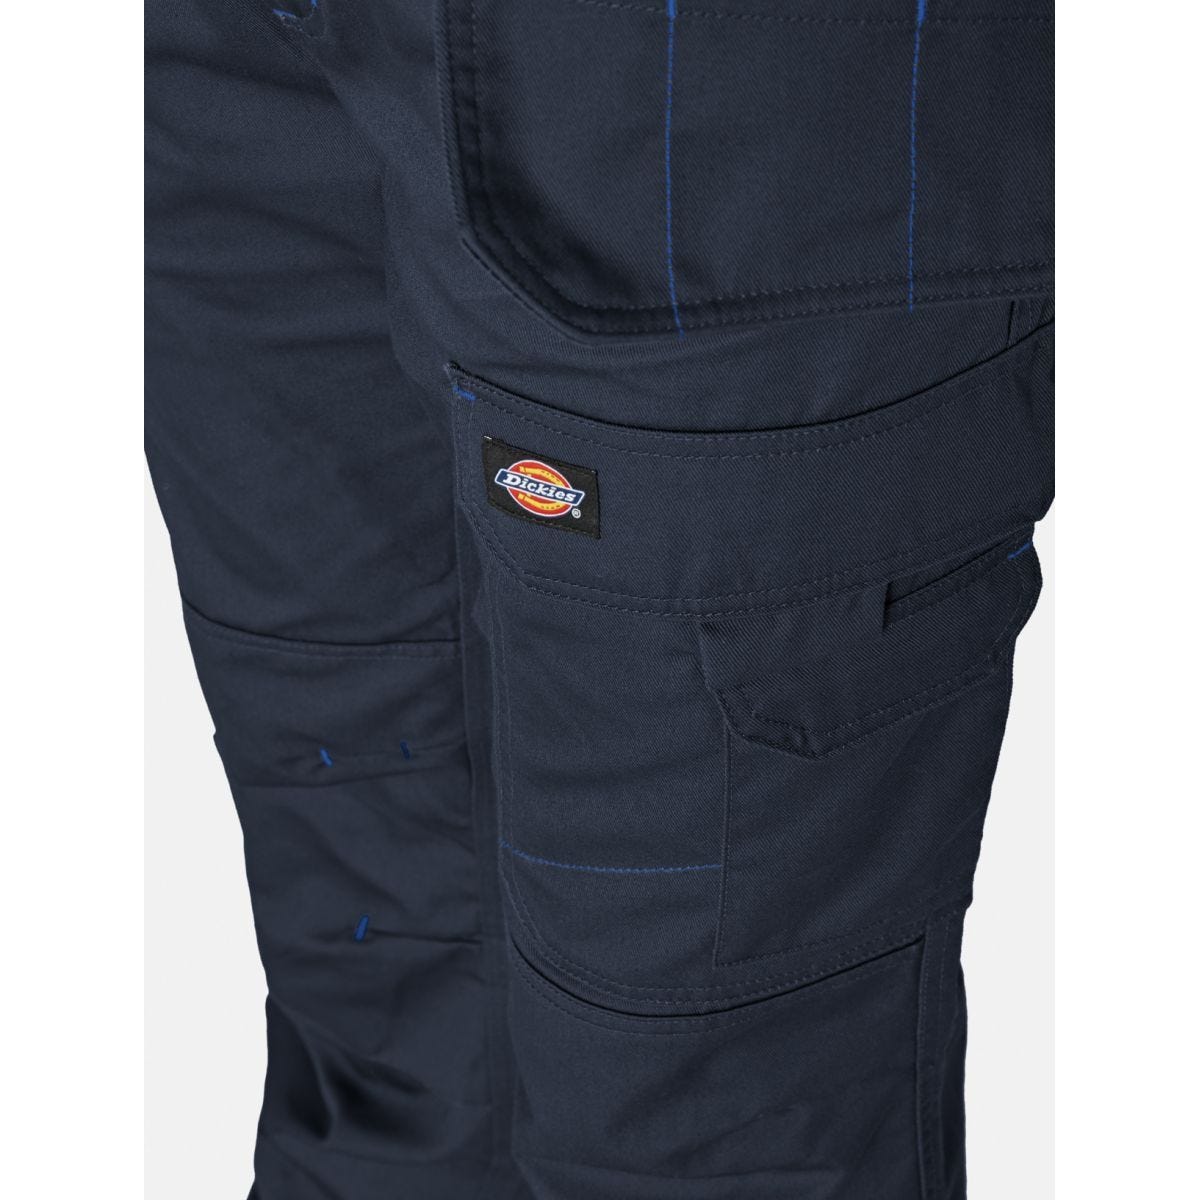 Pantalon Redhawk Pro Bleu marine - Dickies - Taille 42 4